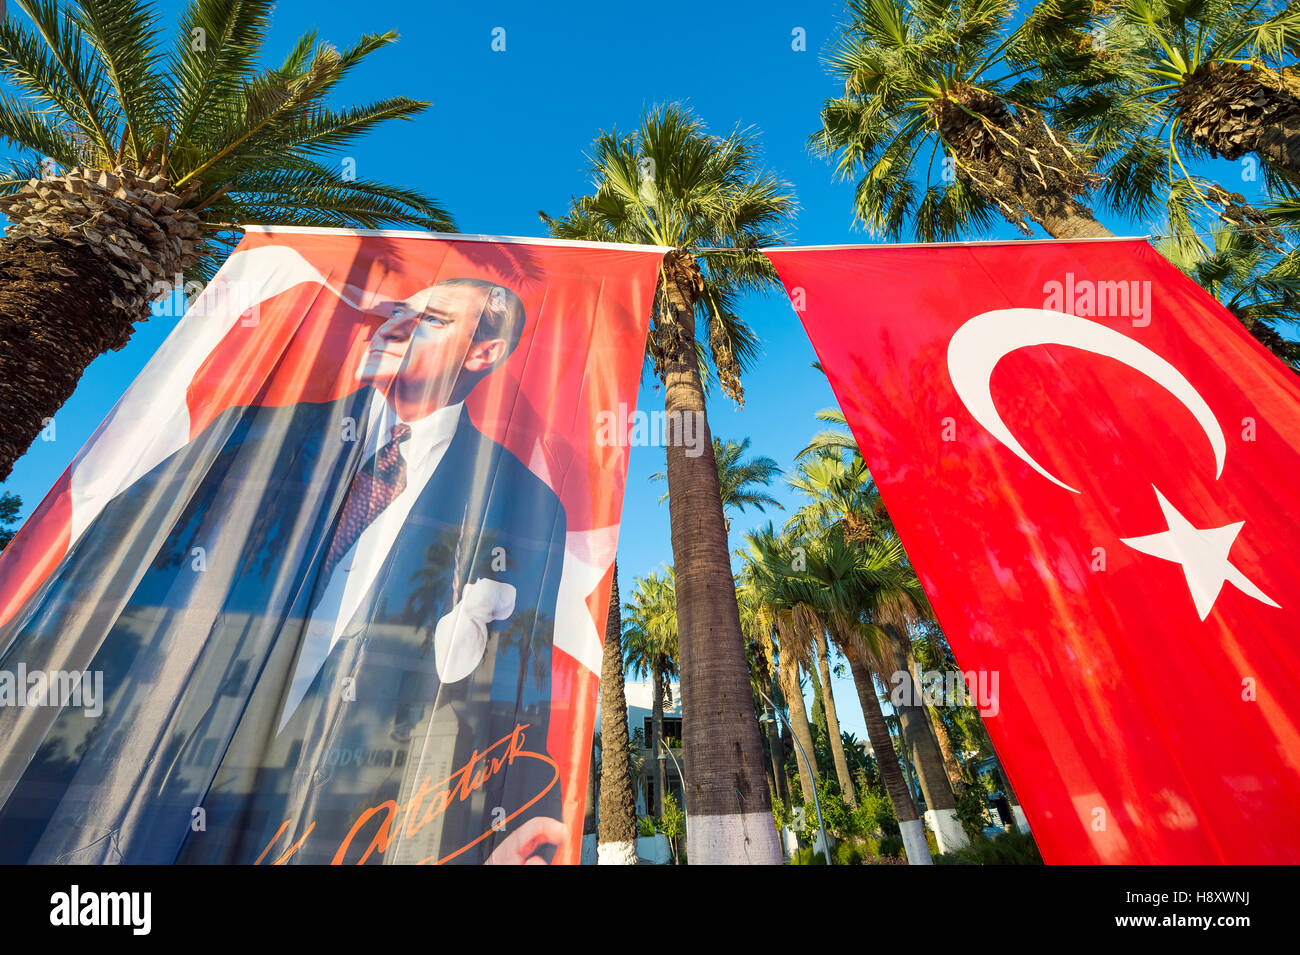 BODRUM, TURQUIE - 6 octobre, 2016 : drapeau turc accroché à côté du portrait de Mustafa Kemal Atatürk, fondateur de la République. Banque D'Images